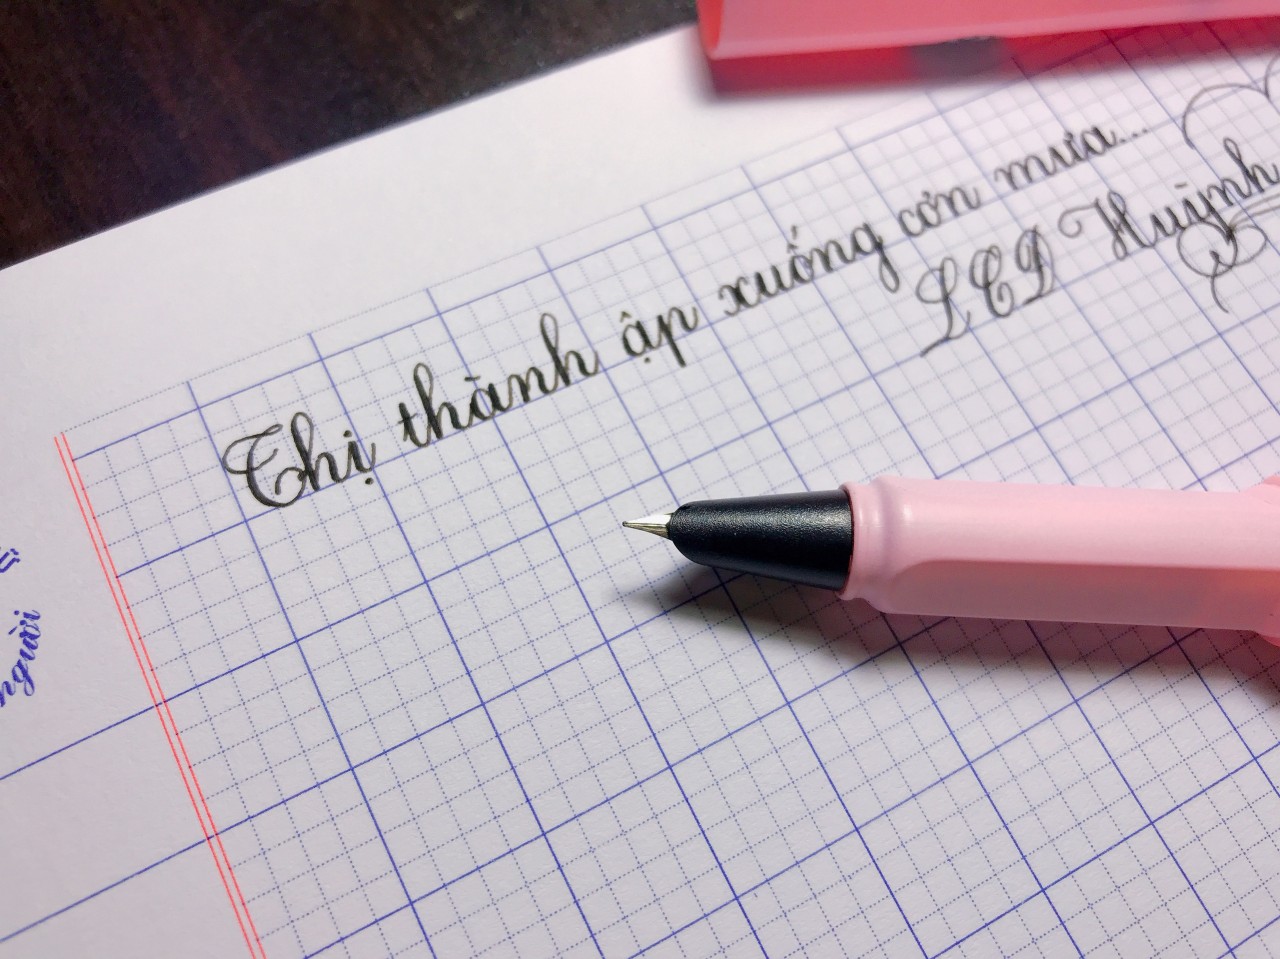 Bút luyện chữ đẹp Hoàng Ngọc T04: Tìm kiếm một bút luyện chữ đẹp hoàn hảo để nâng cao kỹ năng viết chữ của bạn? Bút luyện chữ đẹp Hoàng Ngọc T04 sẽ là giải pháp tuyệt vời. Hãy xem hình ảnh để khám phá những đường nét tinh xảo, sắc sảo của chúng!